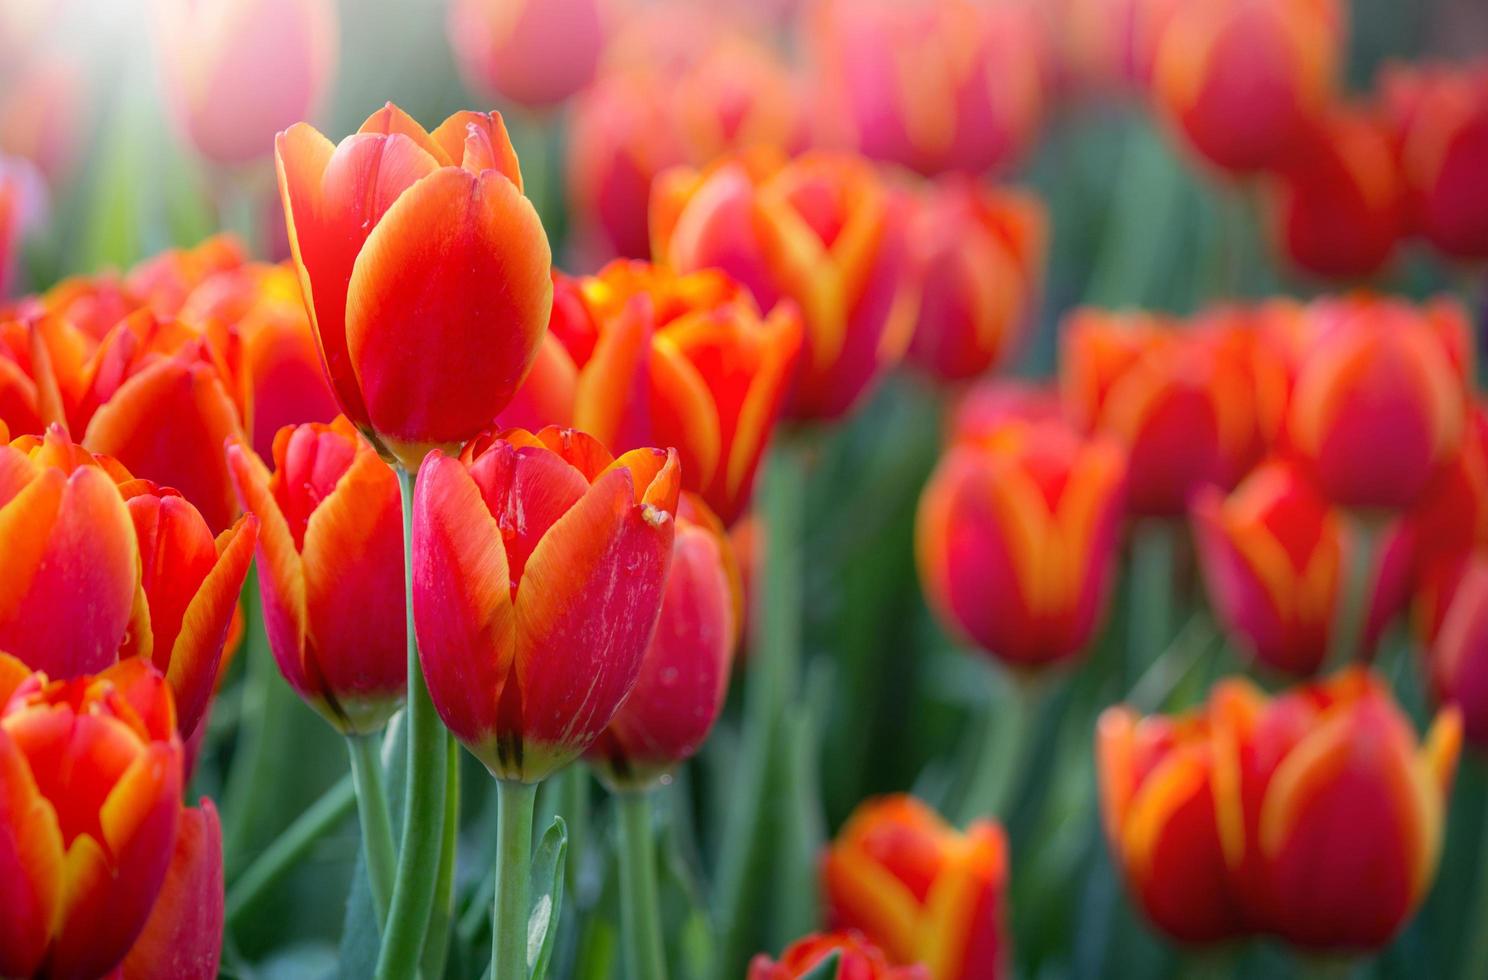 campos de flores de tulipanes rojos que florecen en el jardín foto